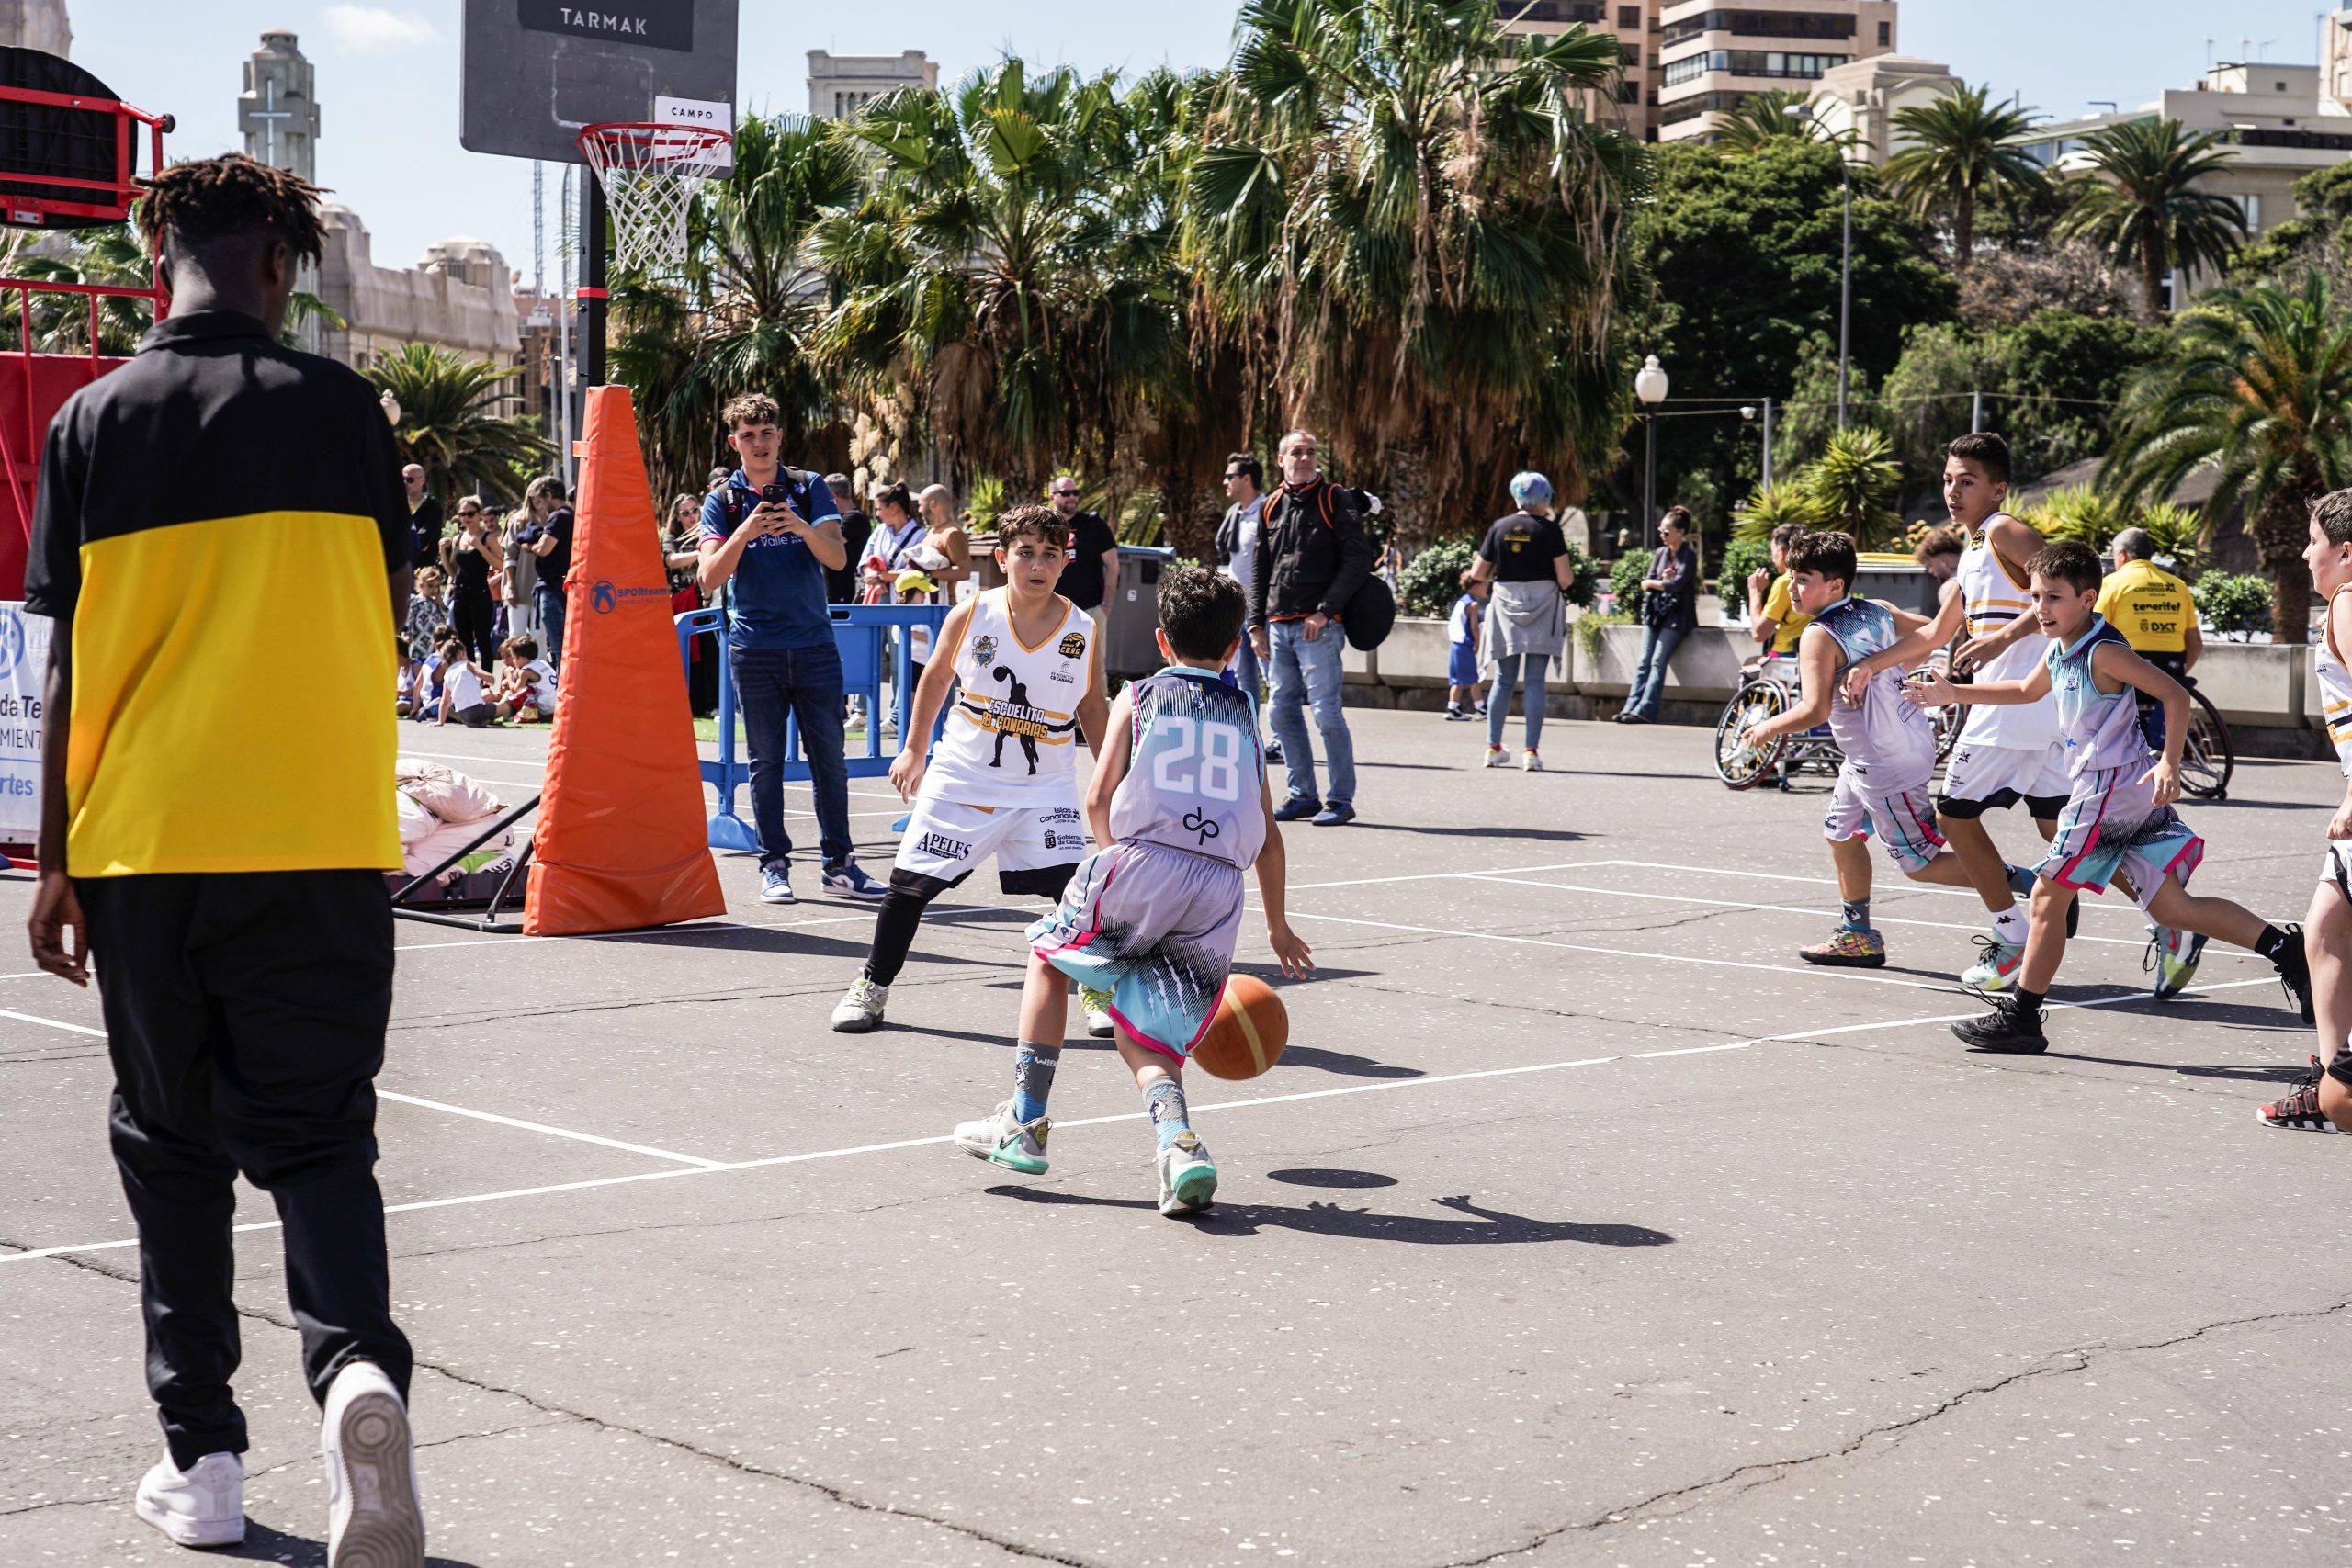 Torneo Puertos, fiesta del baloncesto en el corazón de Santa Cruz